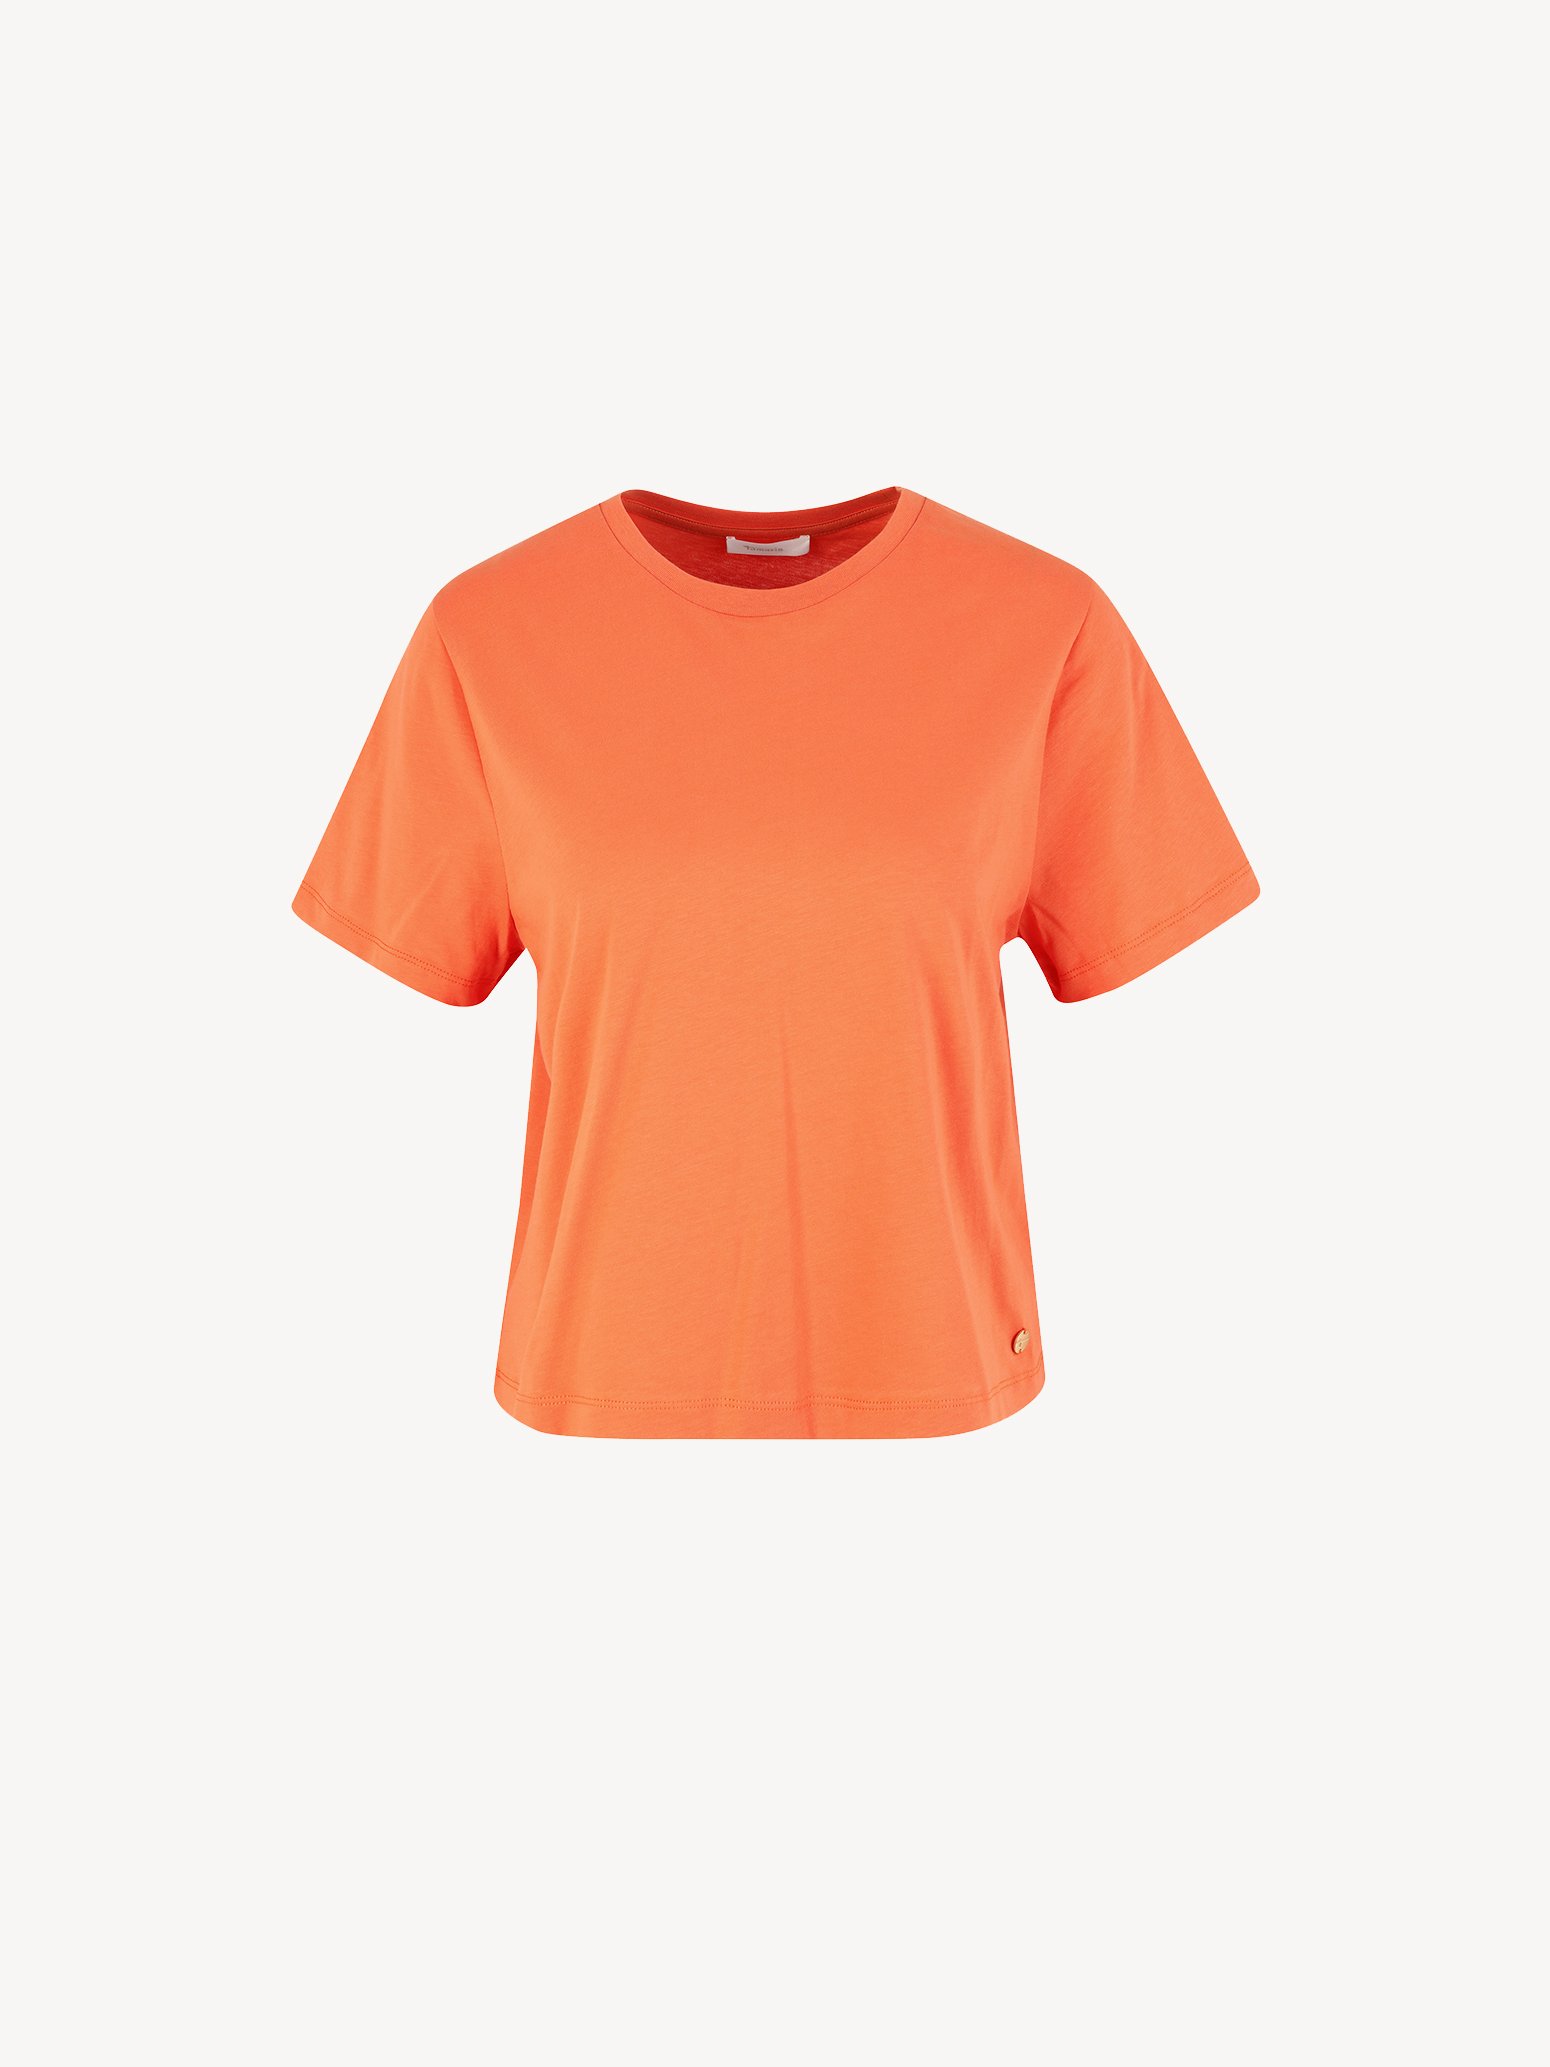 T-shirt - orange TAW0427-30035: Tamaris Shirts & Tops online kaufen!